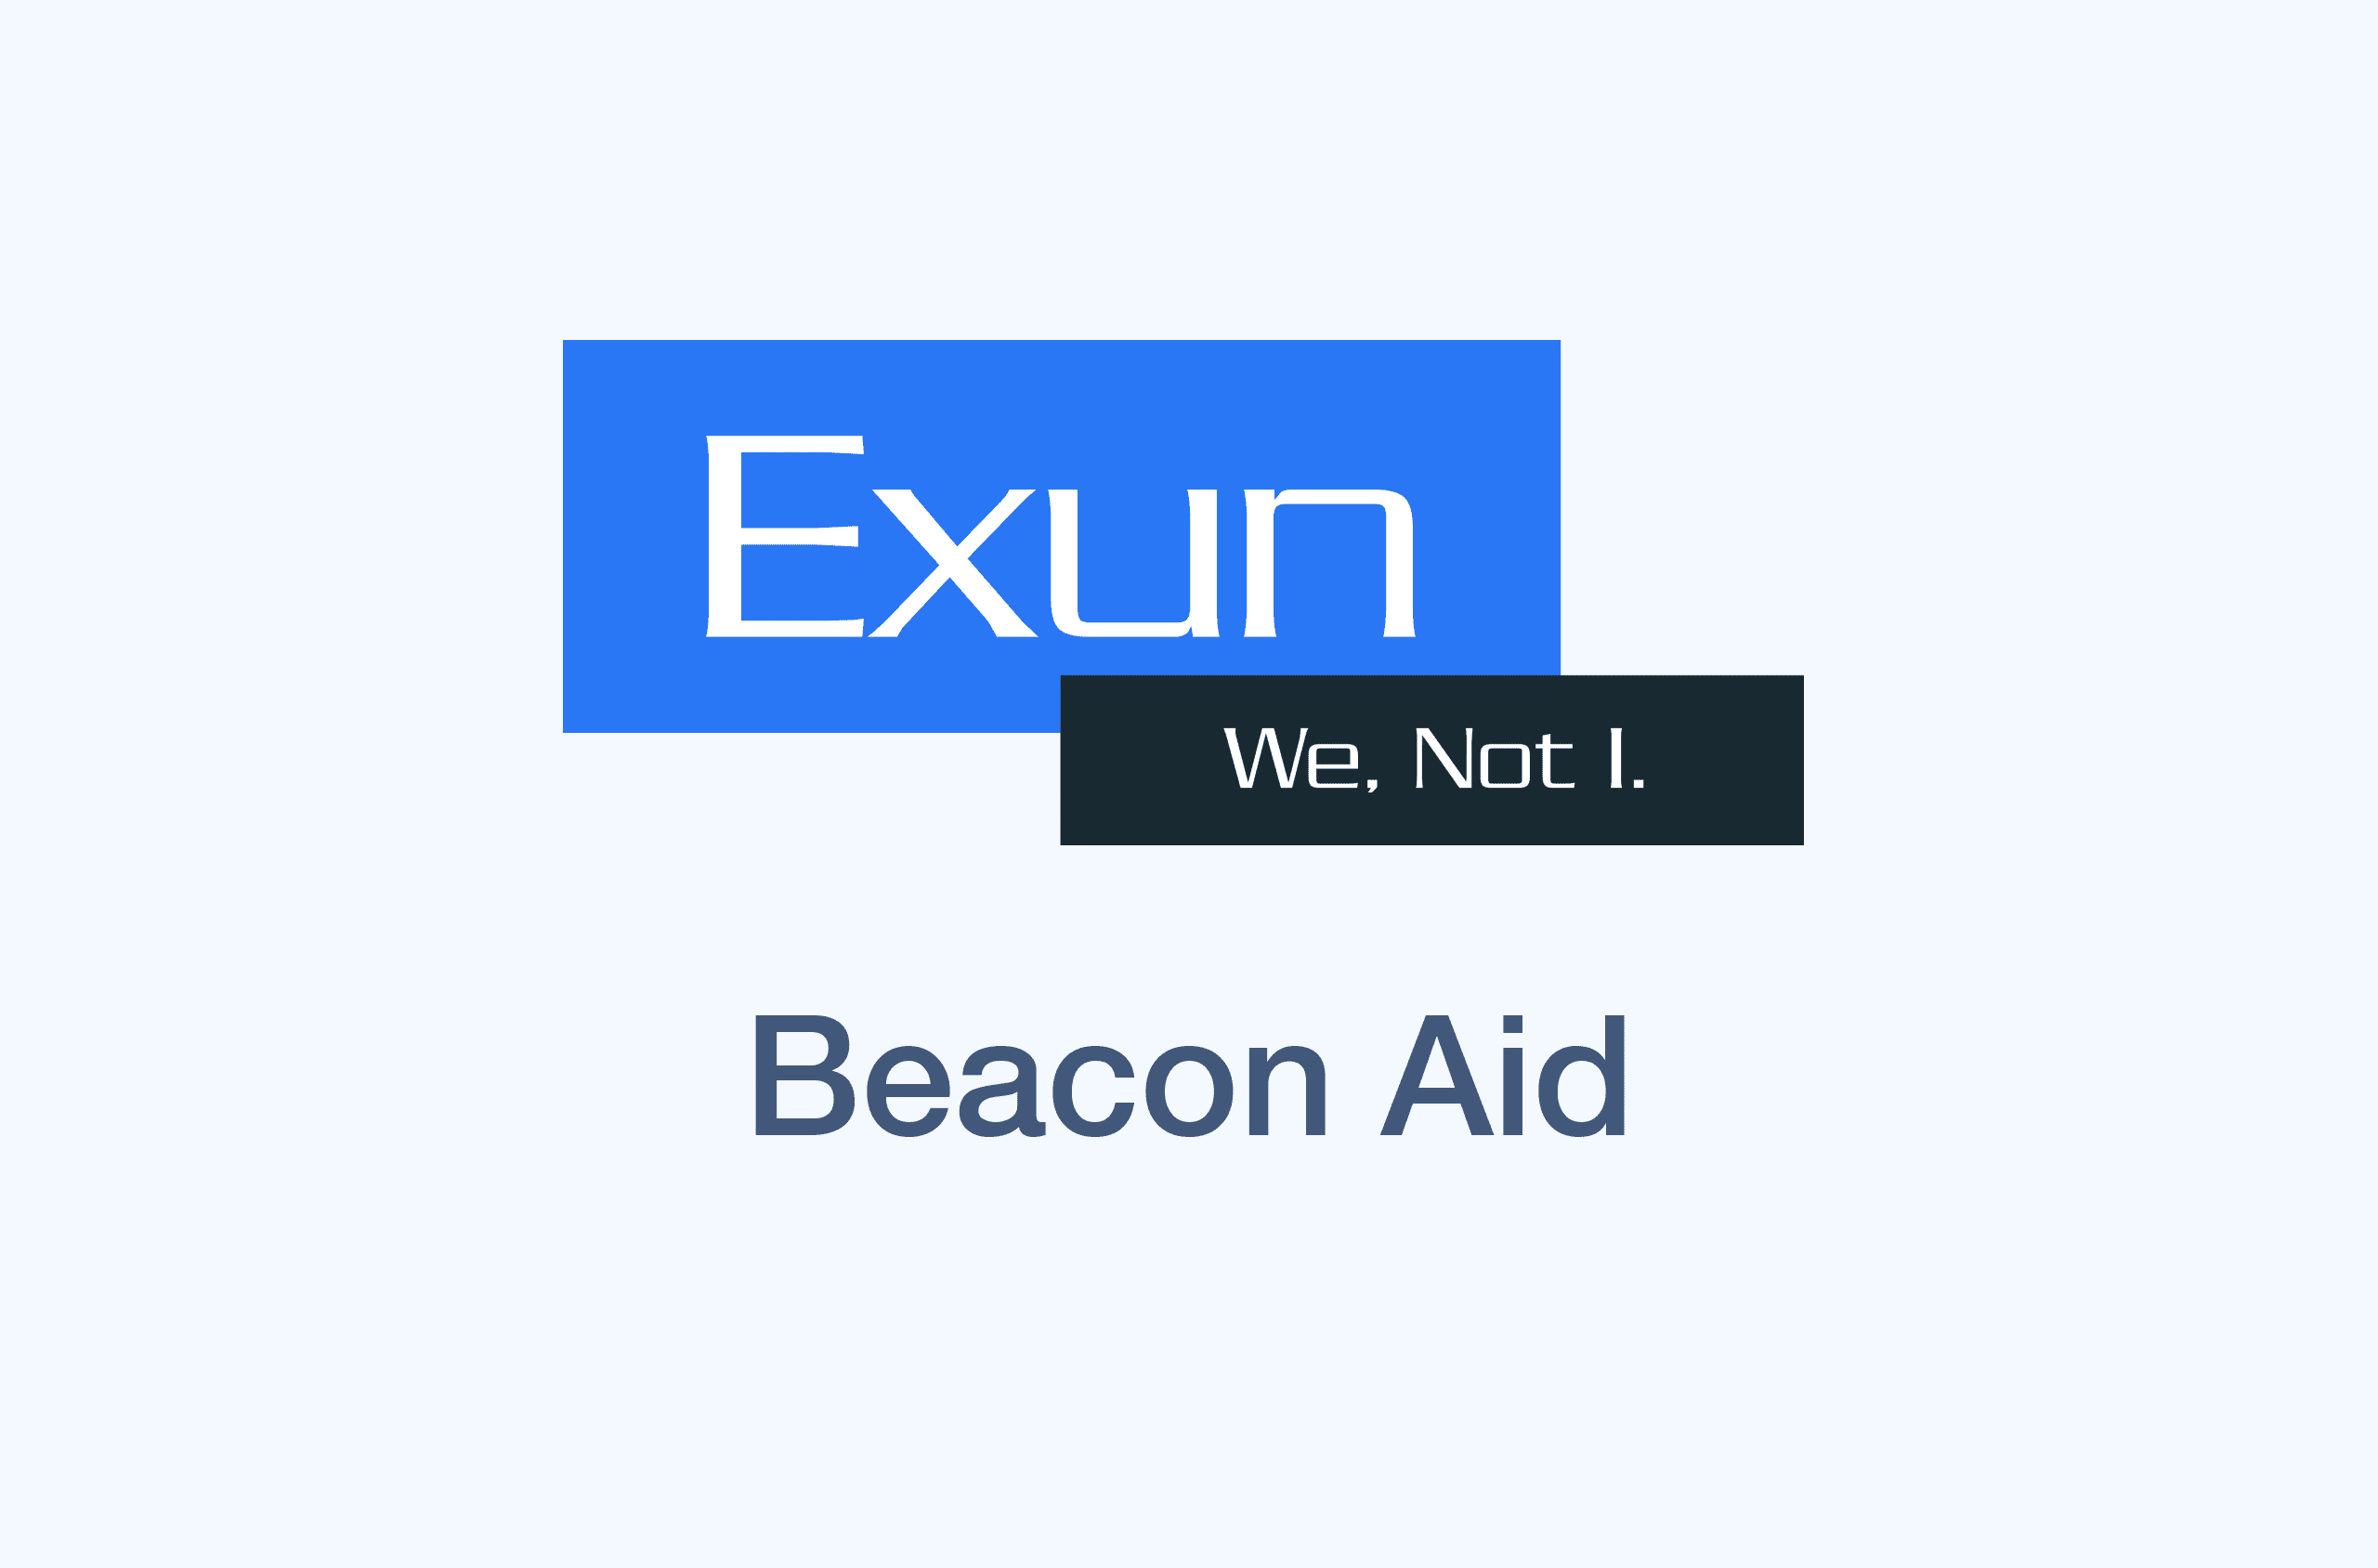 Beacon Aid's image